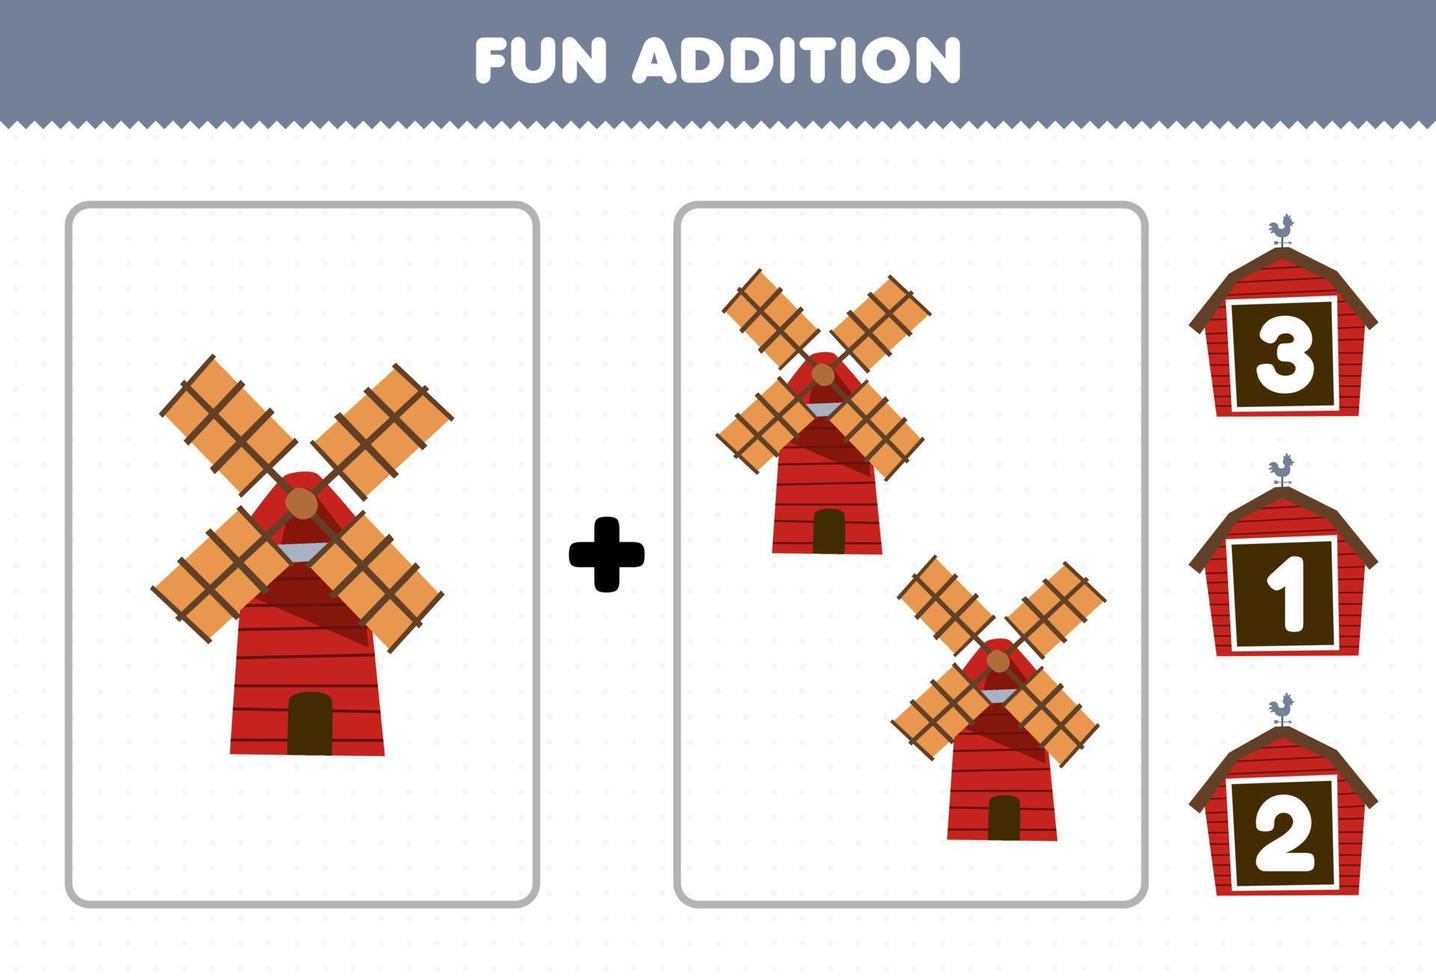 jogo de educação para crianças adição divertida por contagem e escolha a resposta correta da planilha de fazenda para impressão de moinho de vento bonito dos desenhos animados vetor